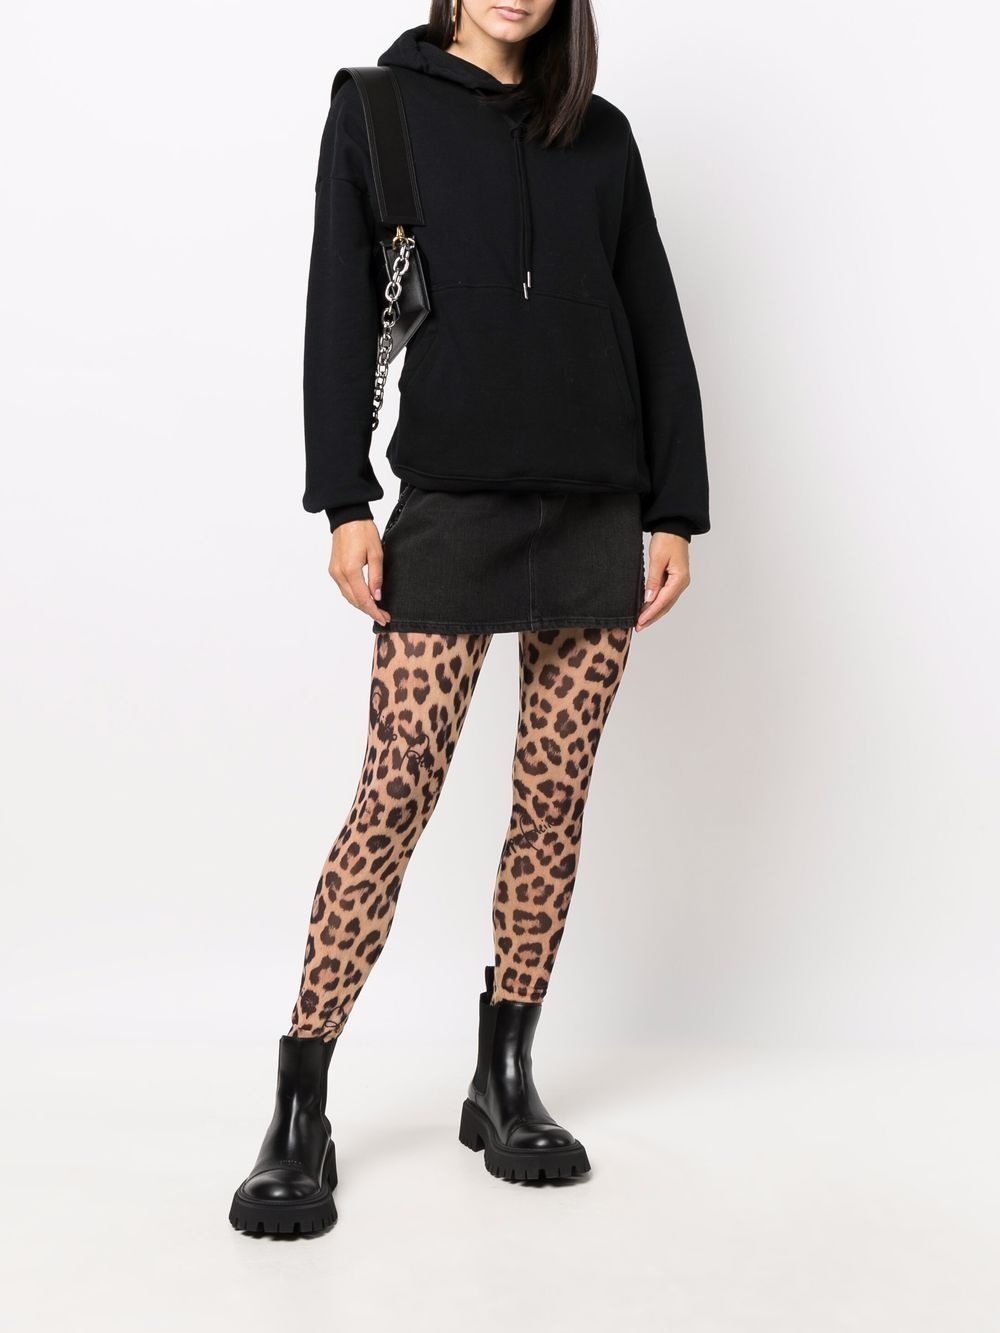 Philipp Plein Leopard Print Tights - Farfetch  Leopard print tights,  Fashion tights, Printed tights